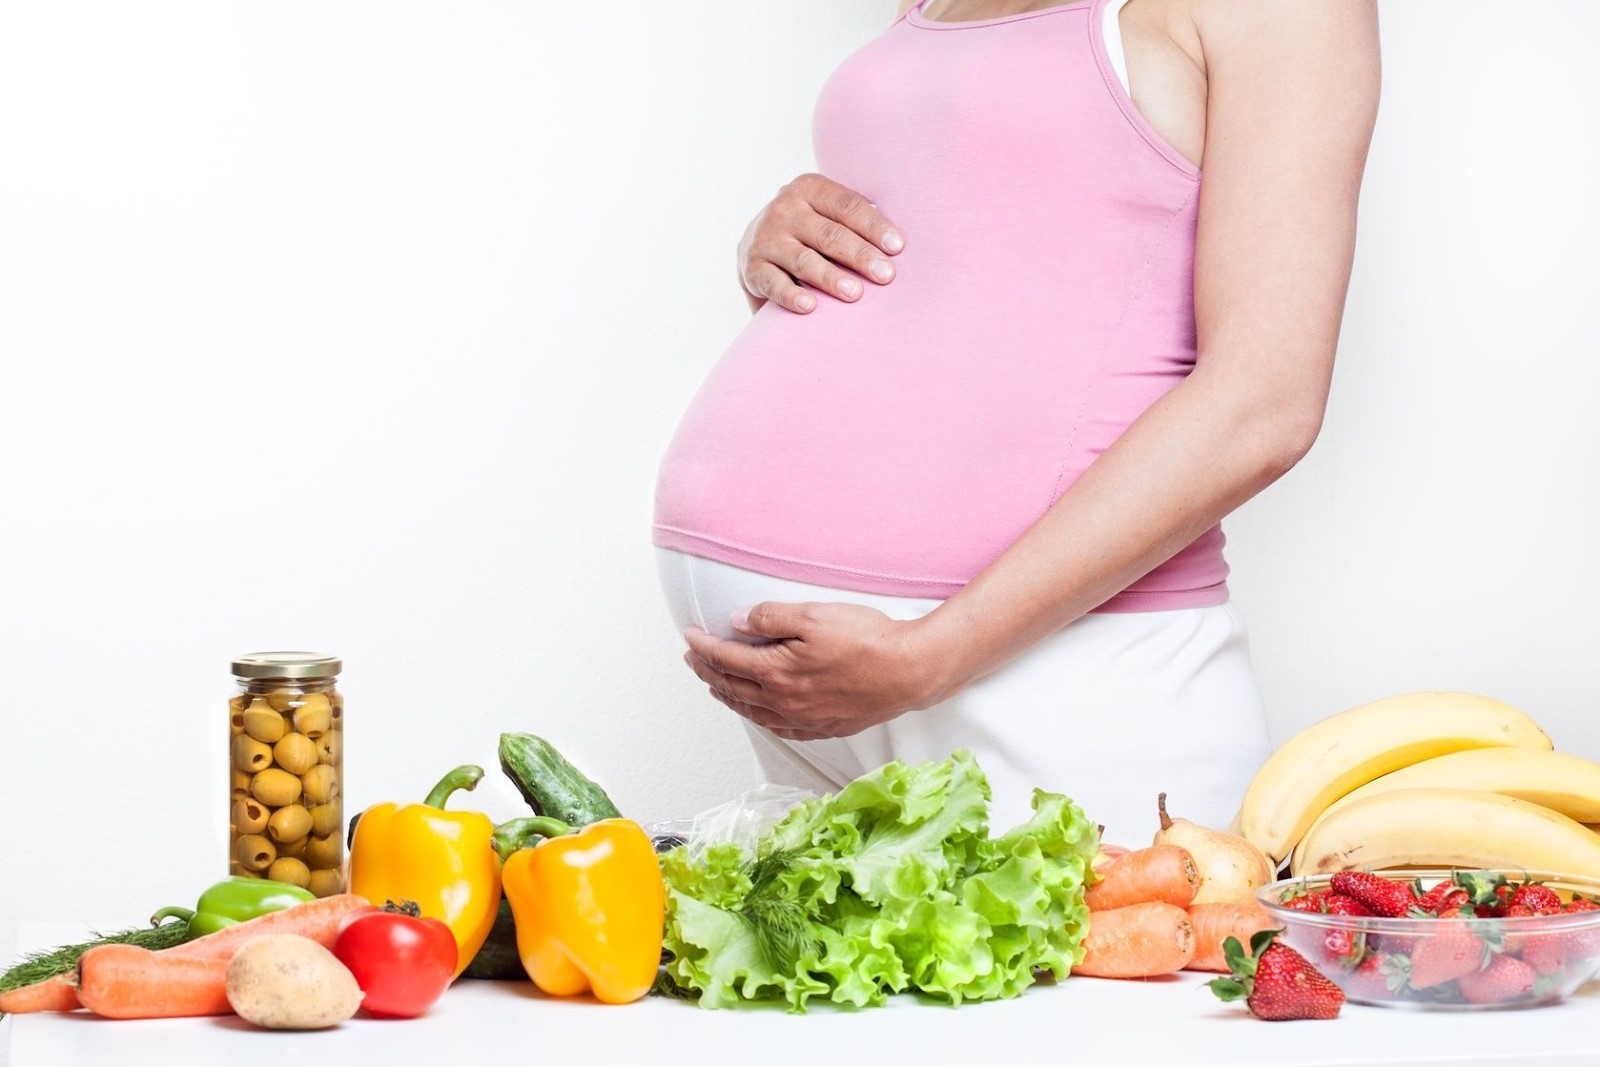 Ớt chuông, dâu tây, chuối là những thực phẩm tốt cho bà mẹ mang thai